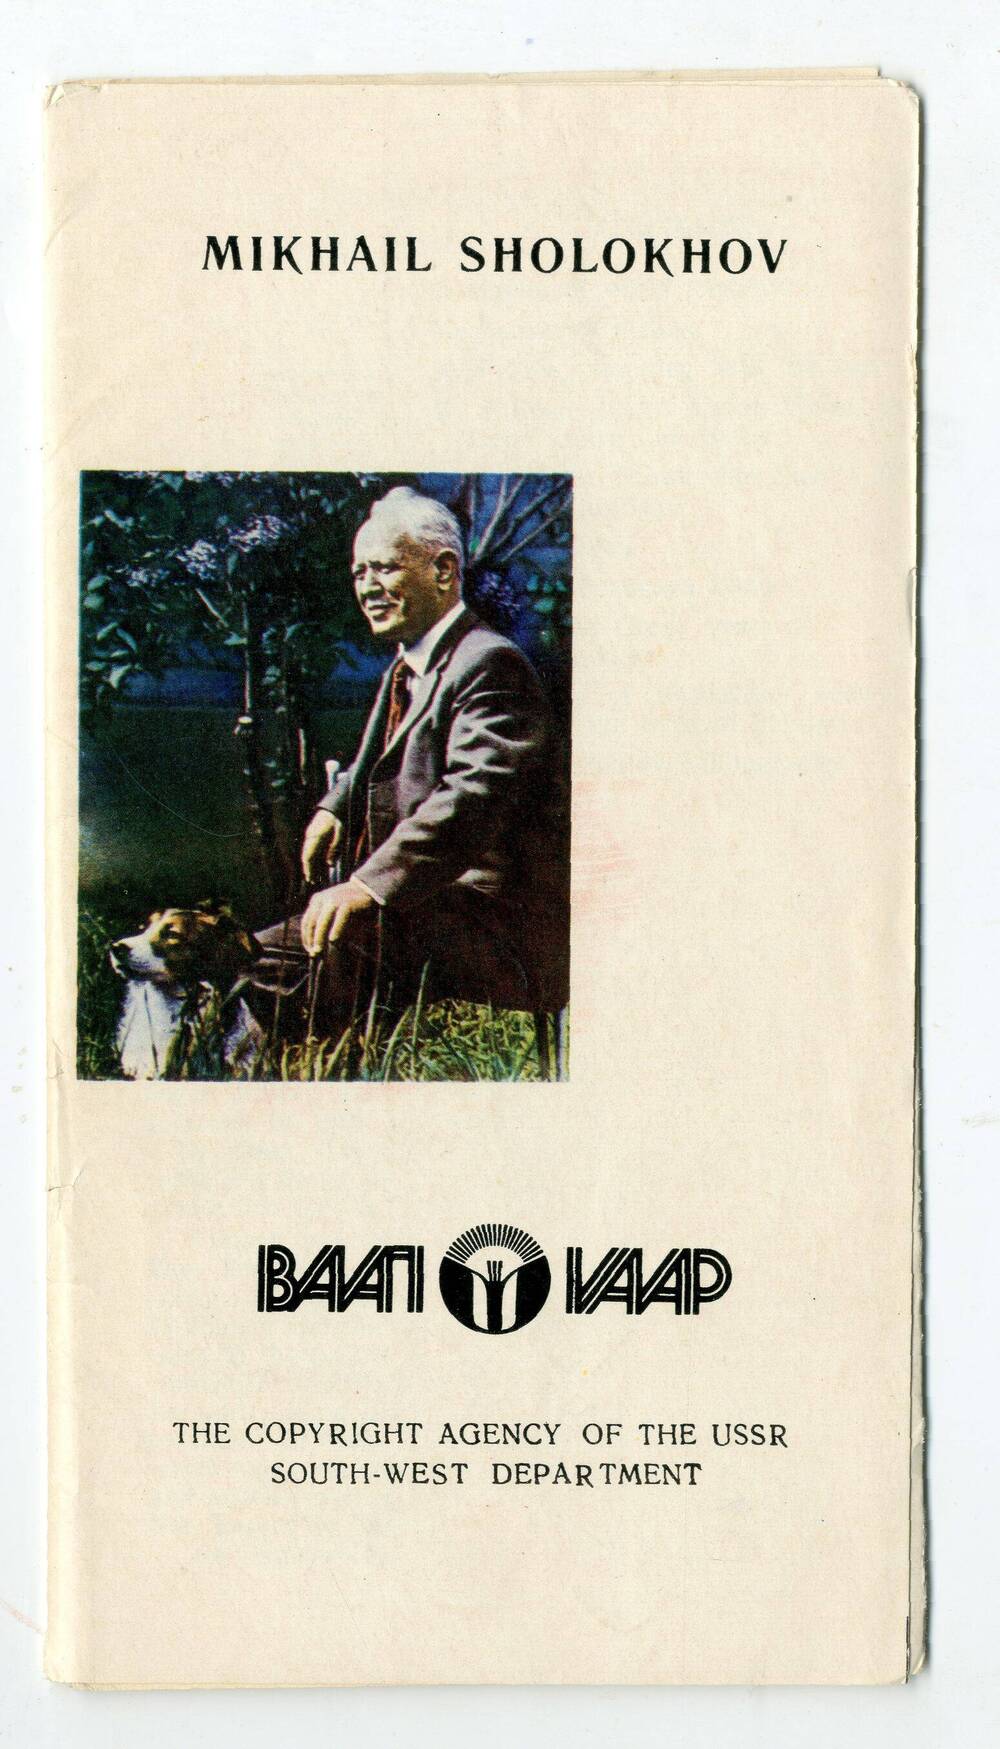 Буклет  Mikhail Sholokhov на английском языке  с рекламой книг о М.А. Шолохове.